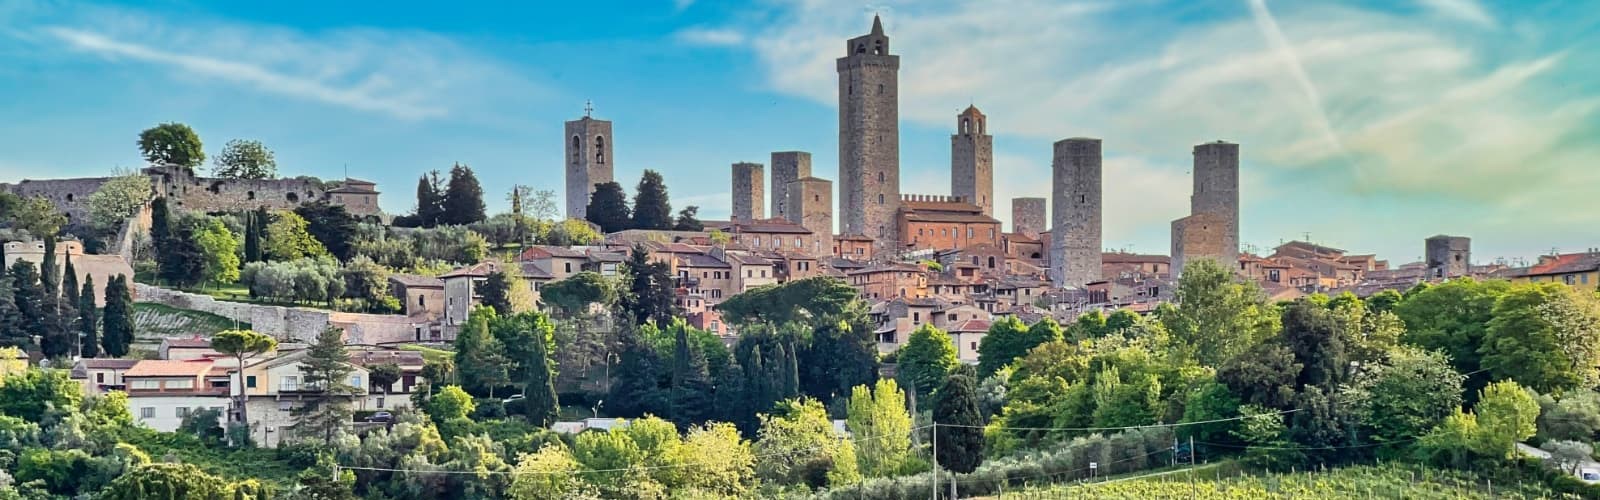 San Gimignano i Siena i Toscana i Italien